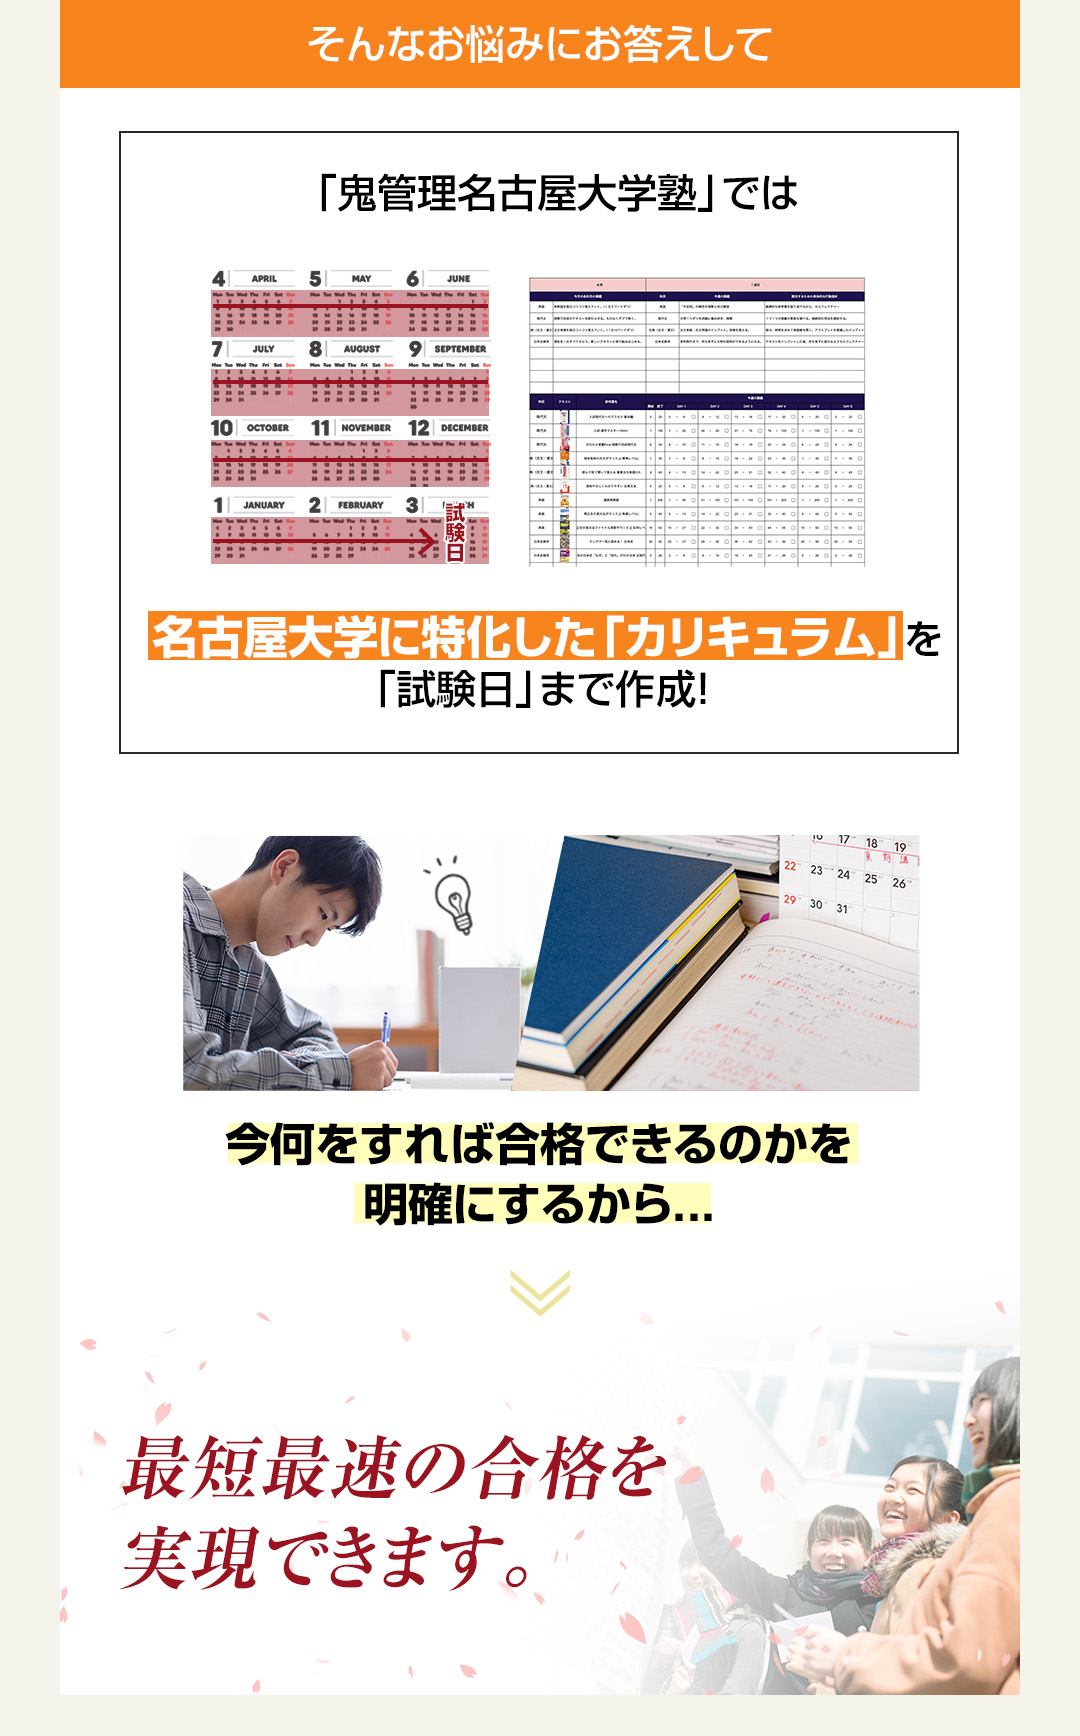 「鬼管理名古屋大学塾」では名古屋大学に特化した「カリキュラム」を「試験日」まで作成